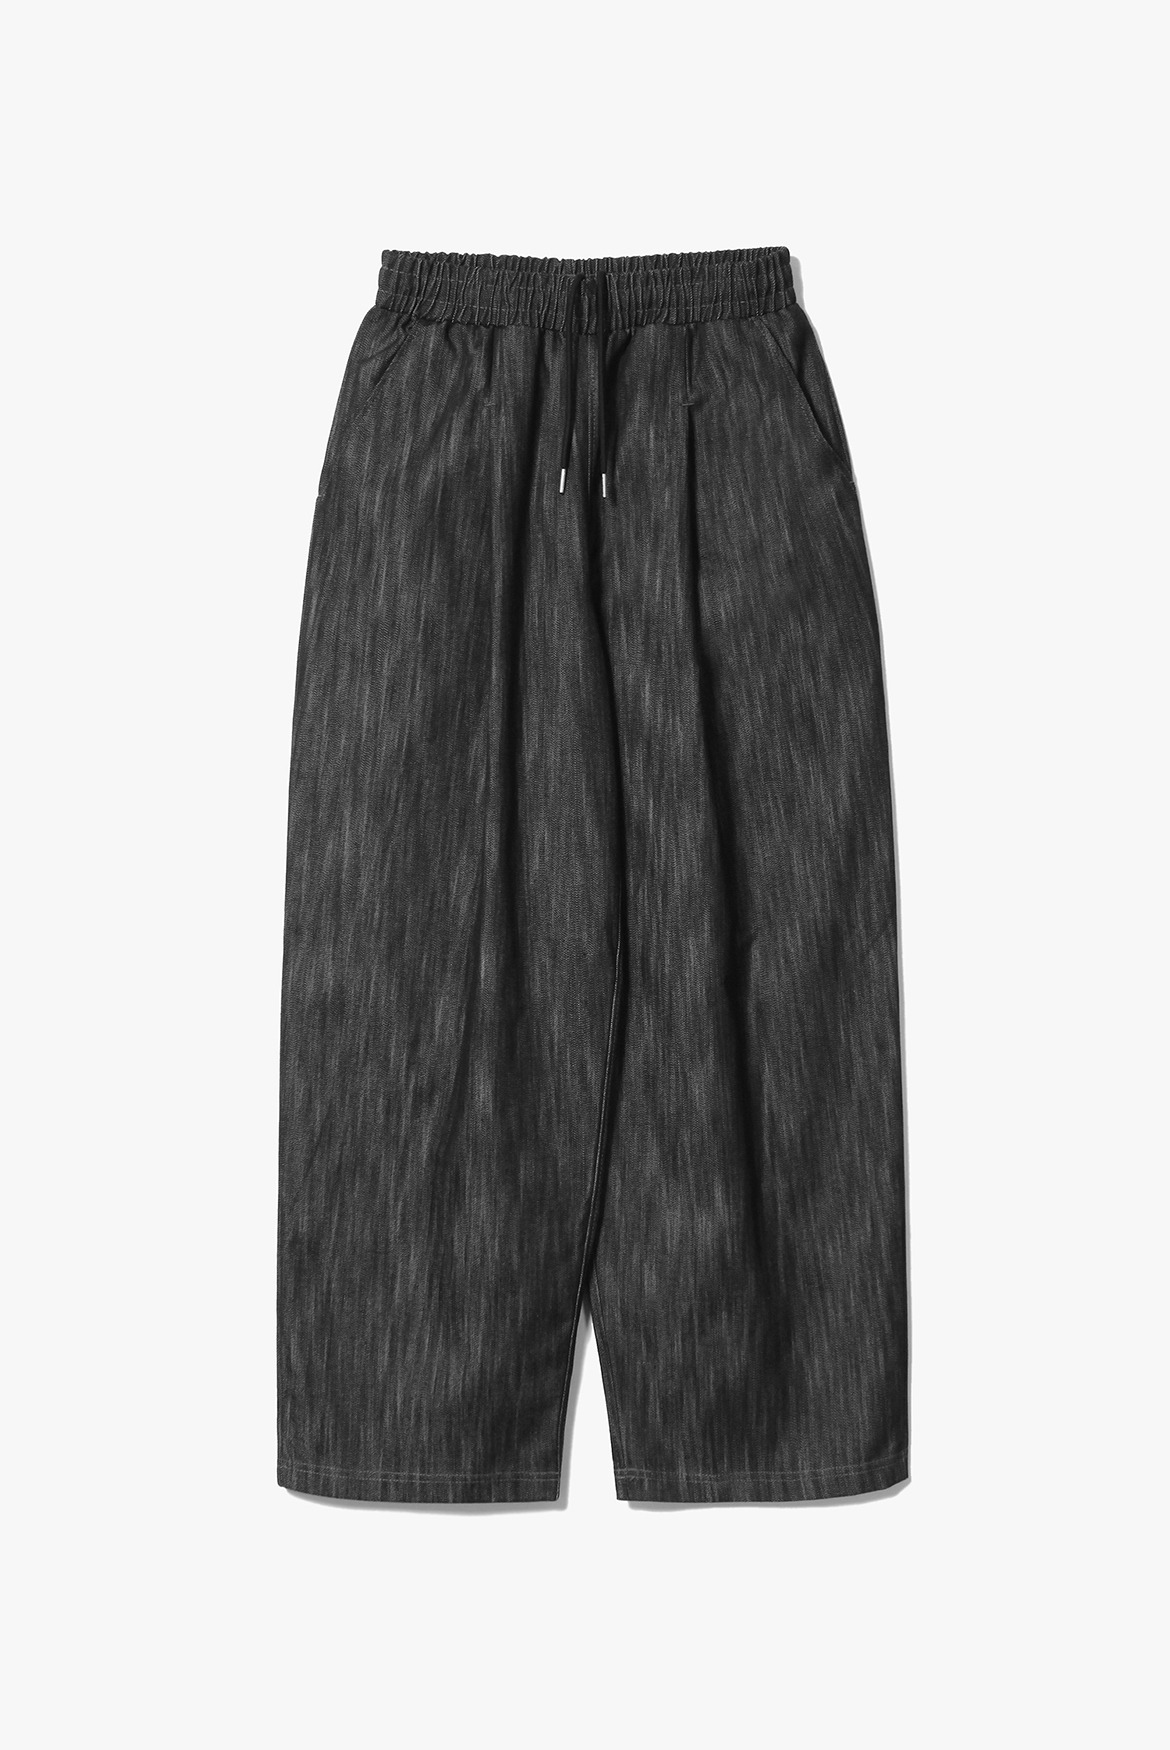 Vertical Deep One Tuck Banding Pants [Black]